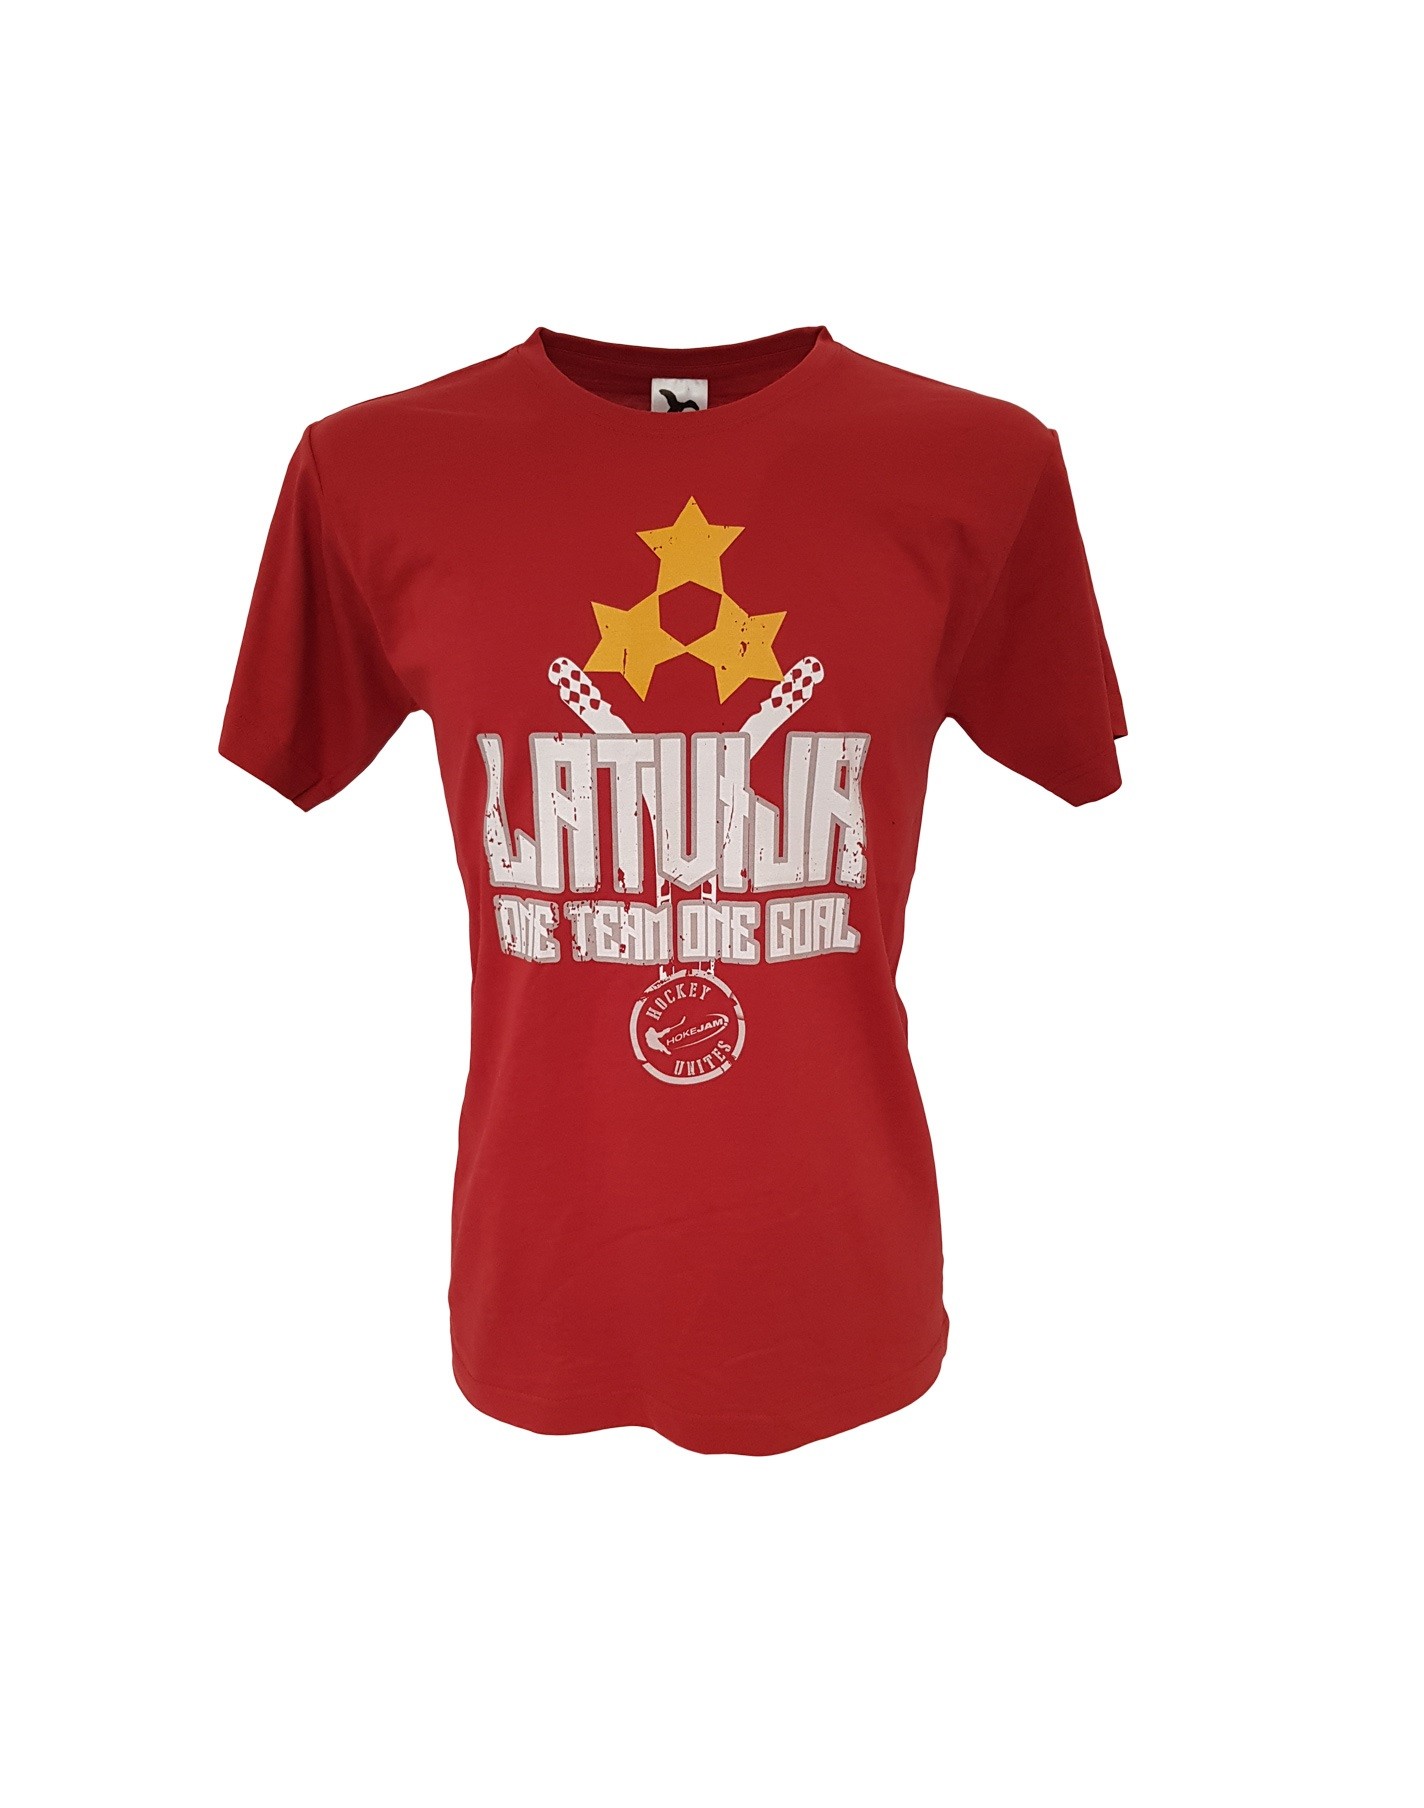 HOKEJAM.LV Latvija One Team One Goal Adult Футболка 